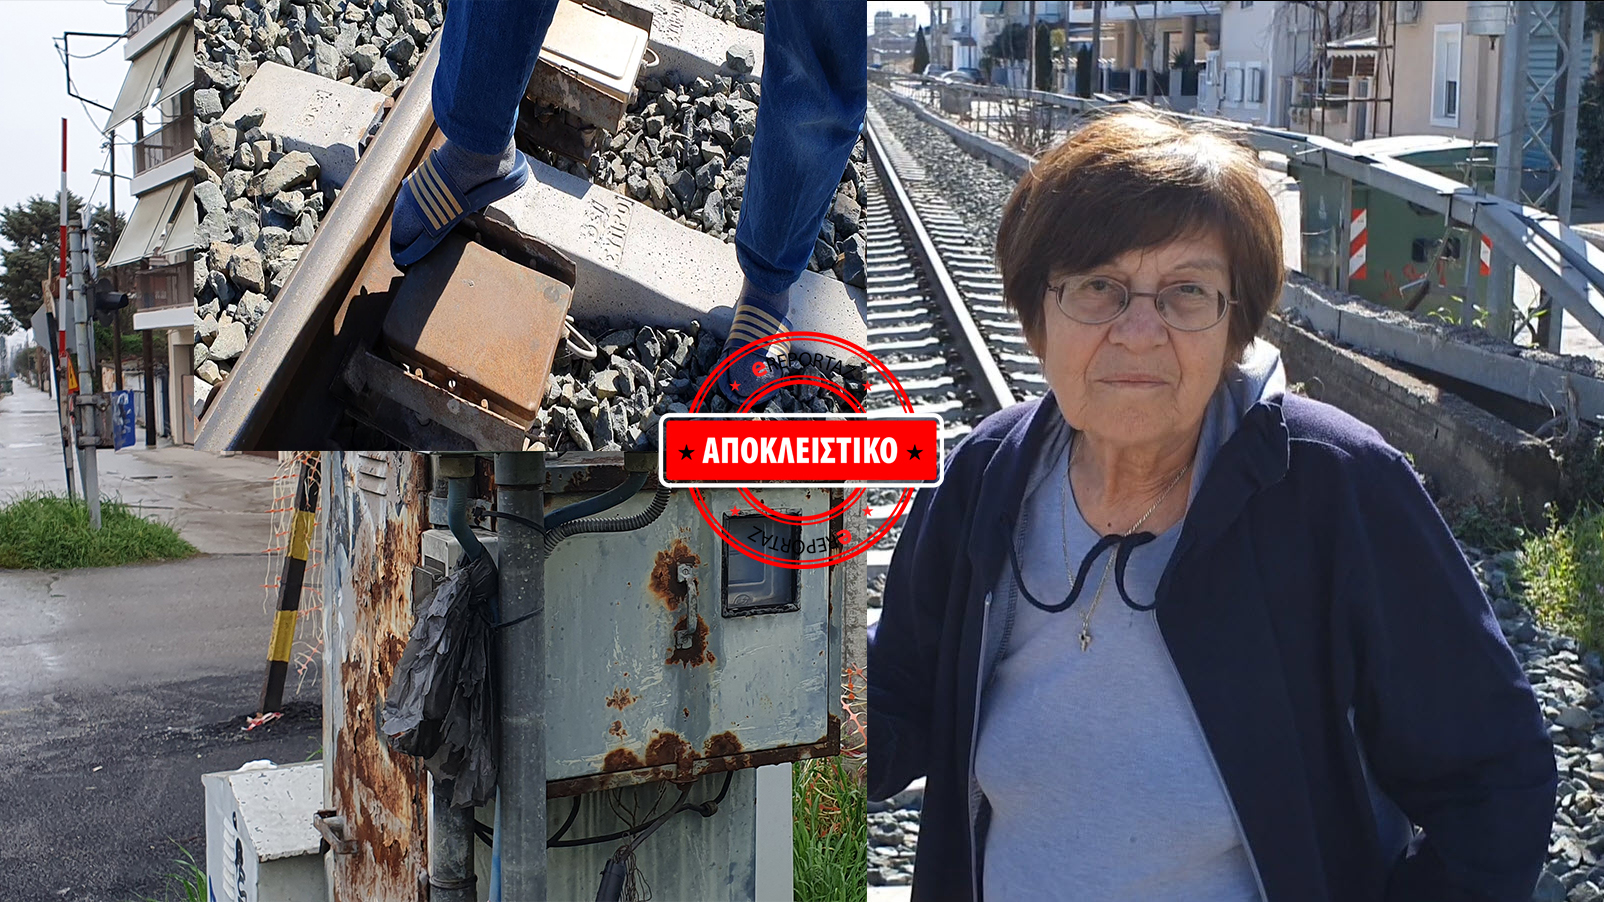 Λάρισα - Απίστευτο: Οι κάτοικοι ανεβάζουν μόνοι τις μπάρες ασφαλείας! - Η βλάβη στο απαρχαιωμένο σύστημα που προκάλεσε το μοιραίο τρένο